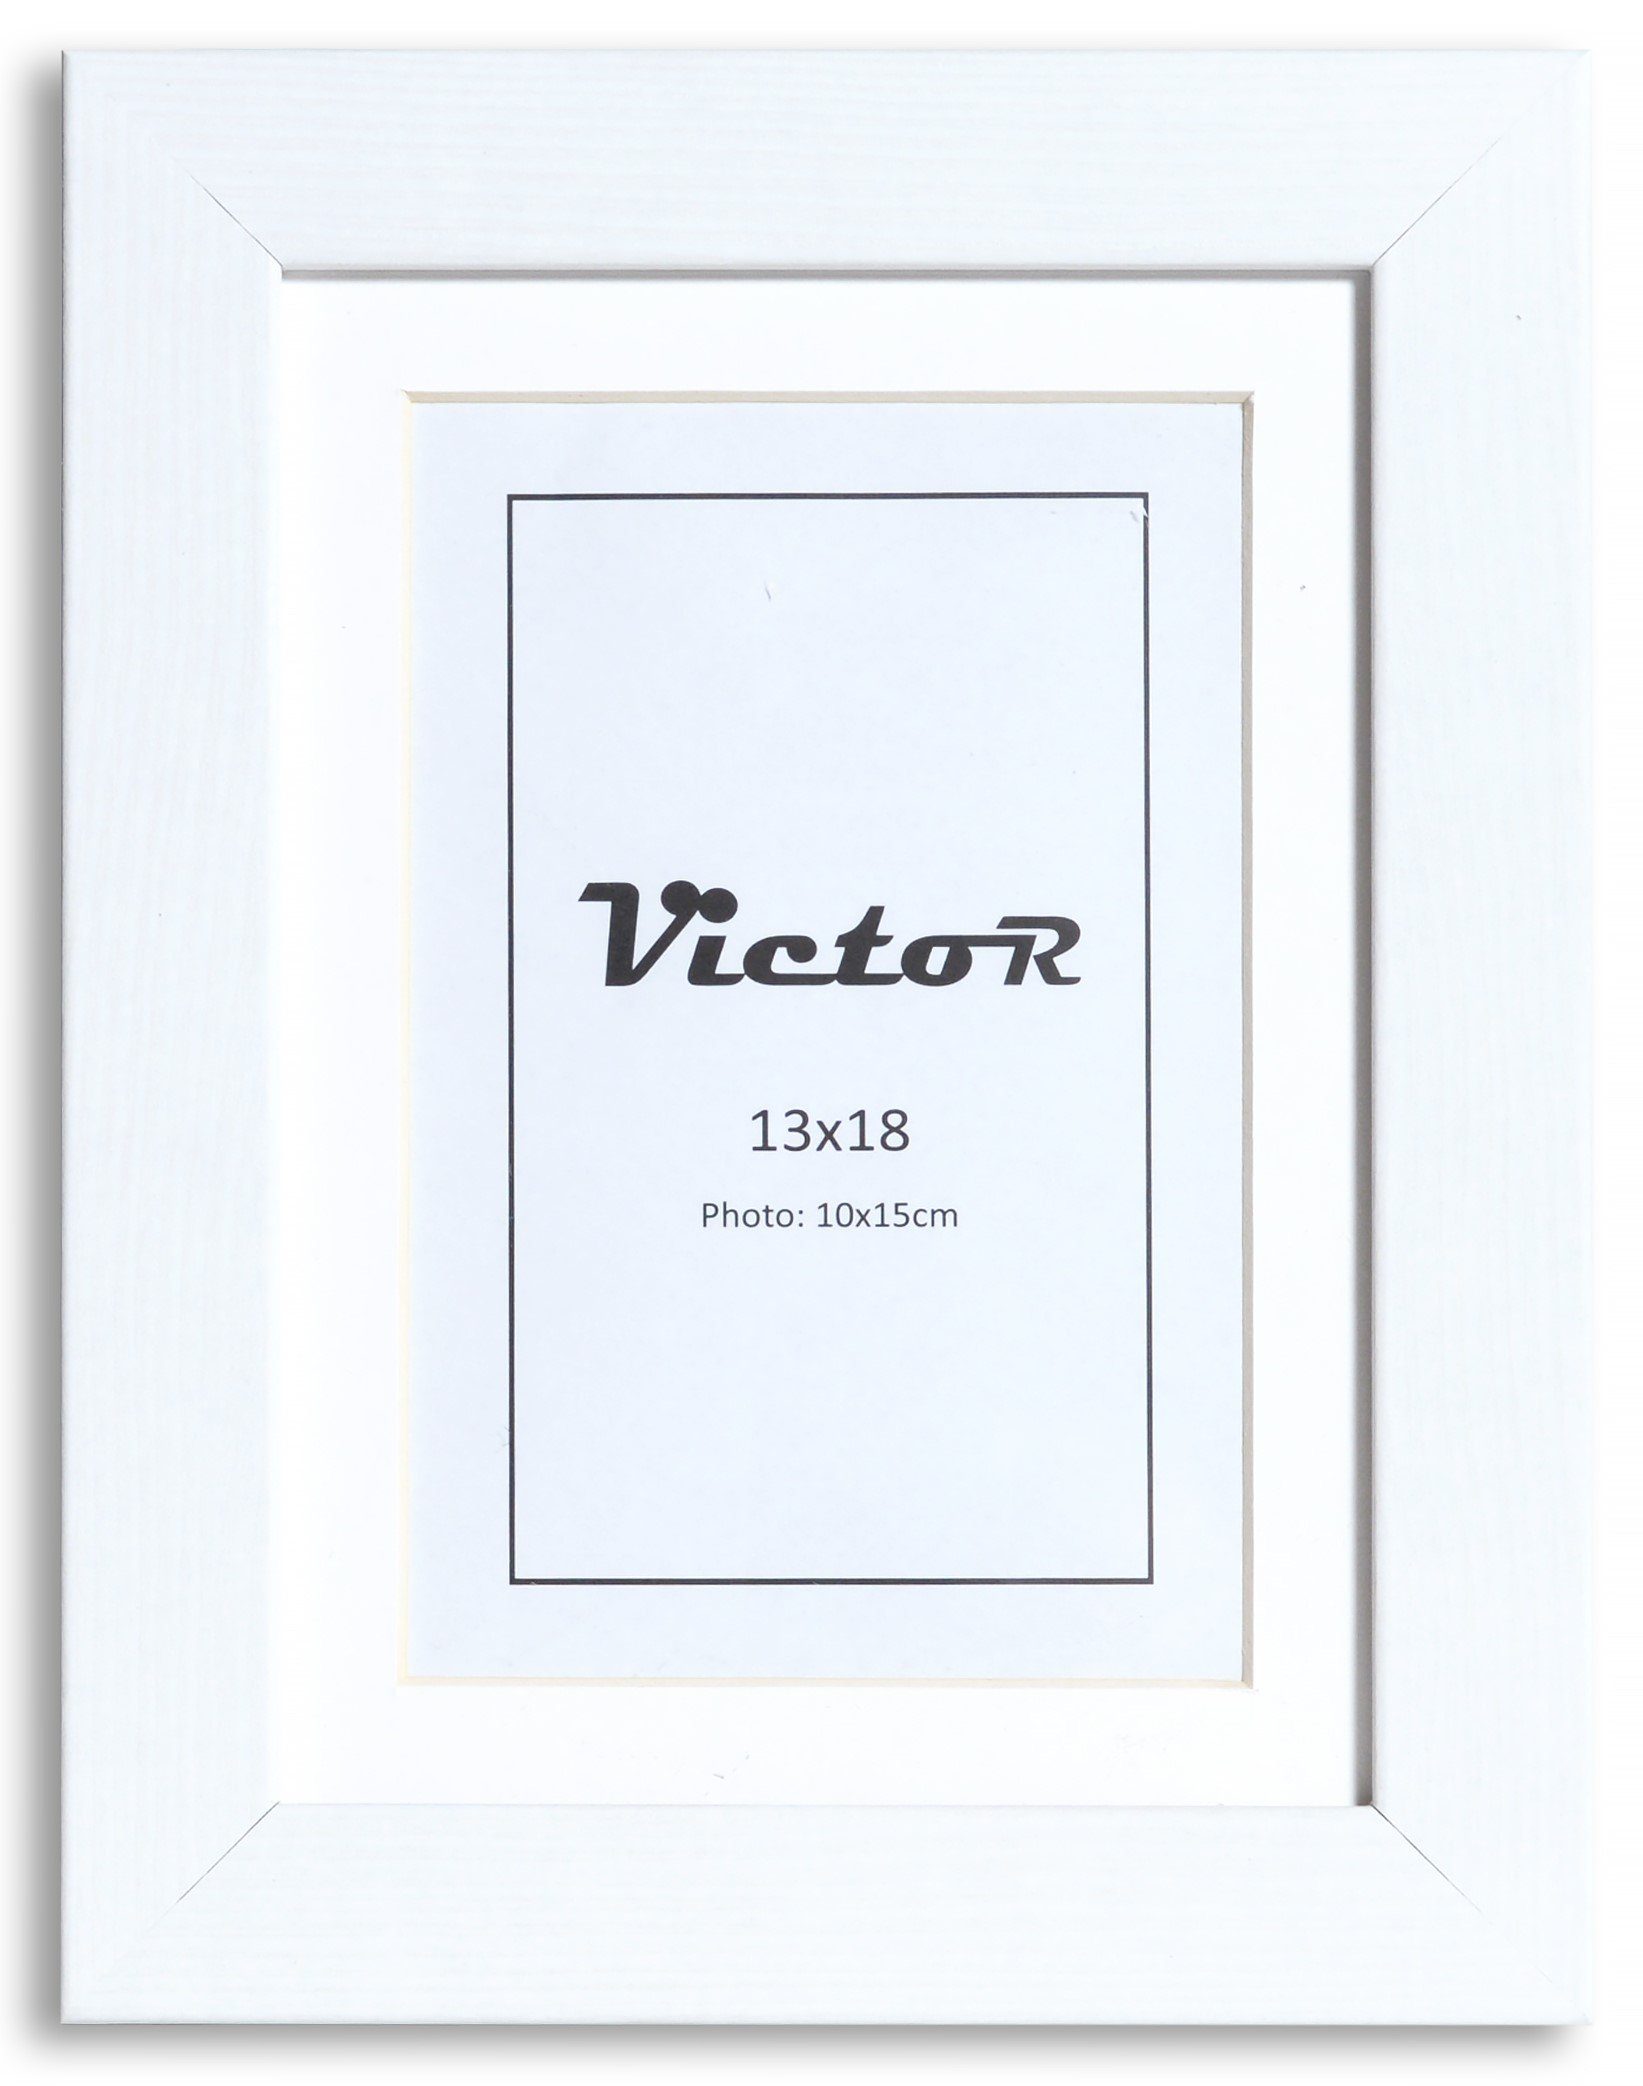 Victor (Zenith) Bilderrahmen Richter, Bilderrahmen Weiß 13x18 cm mit 10x15 cm Passepartout, Holz | Einzelrahmen